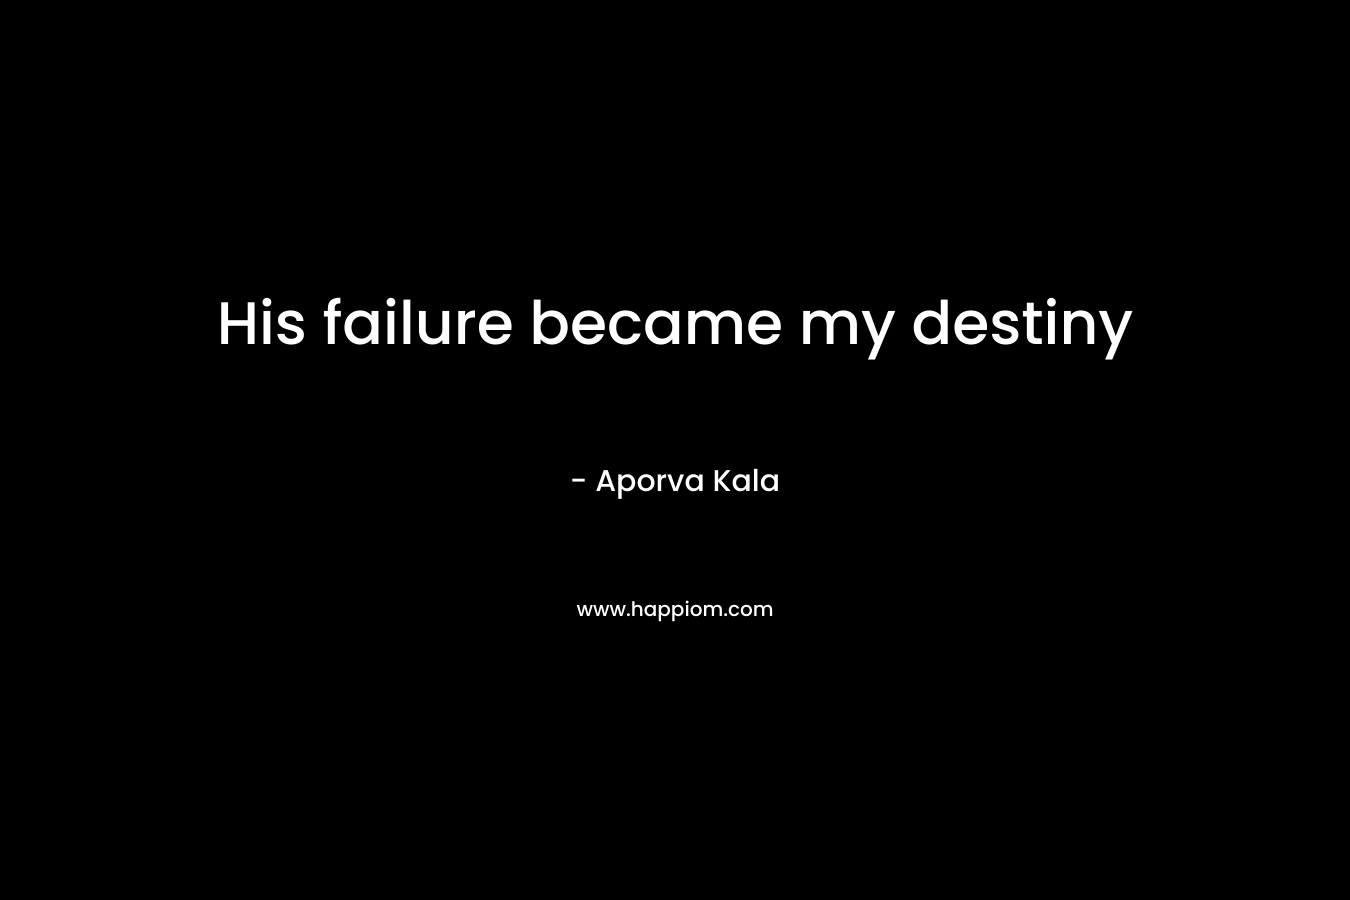 His failure became my destiny